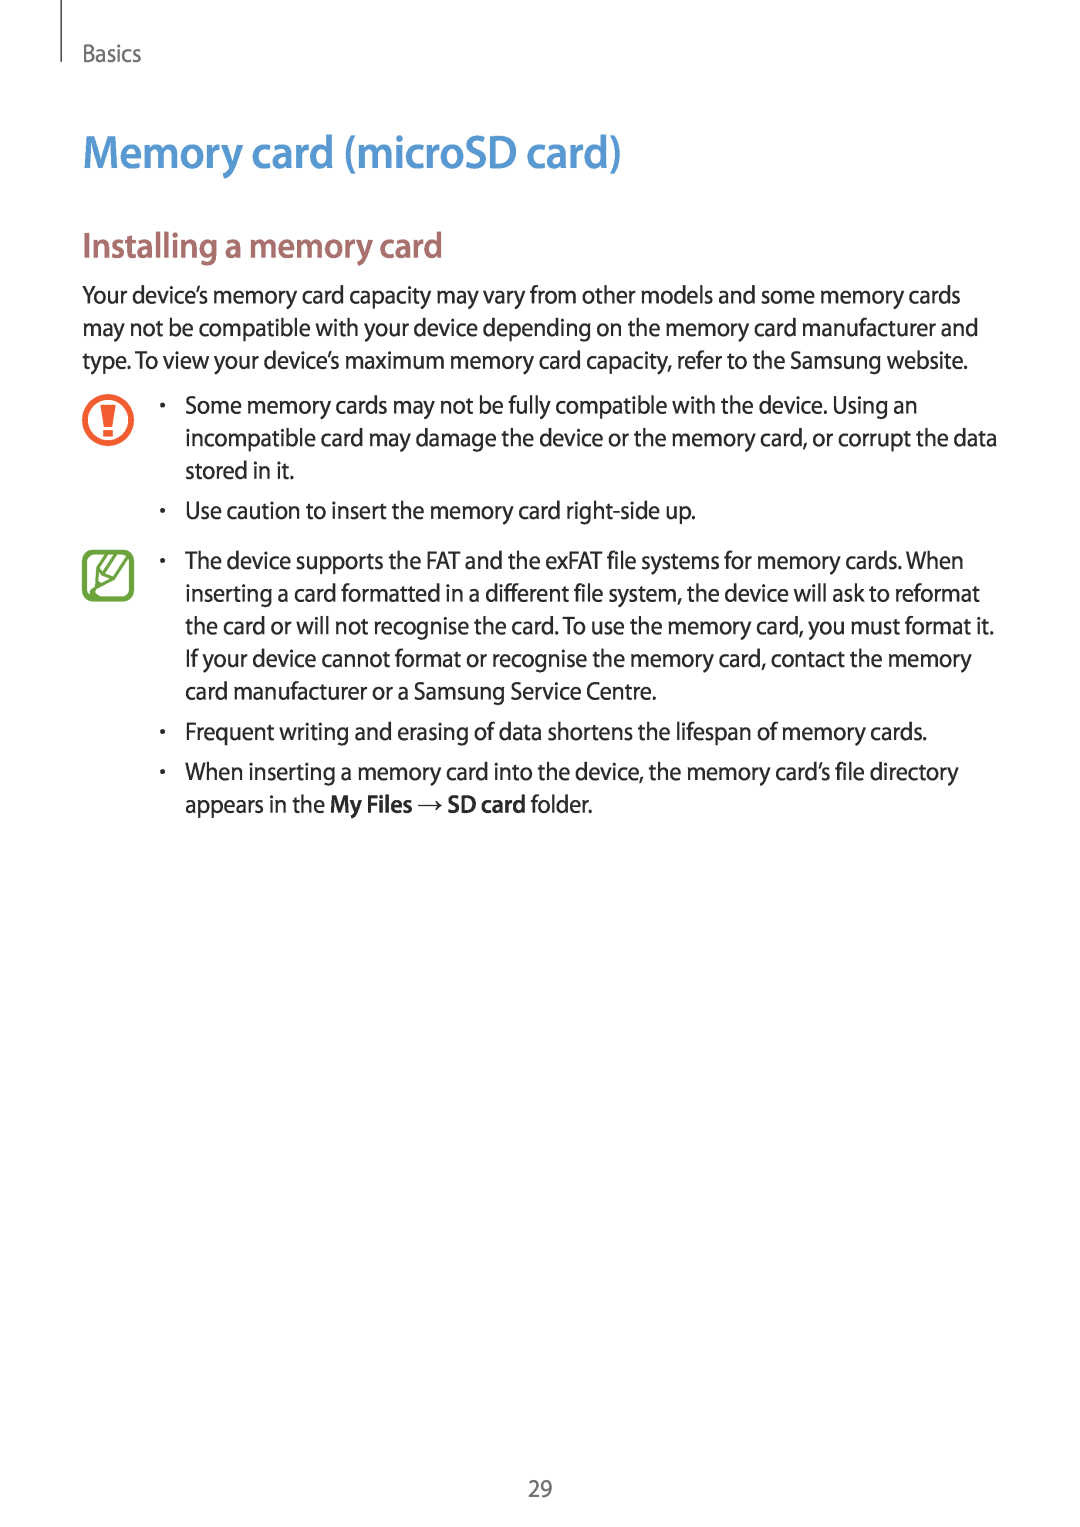 Samsung SM-A320FZDNPHE, SM-A520FZIADBT, SM-A520FZBADBT manual Memory card microSD card, Installing a memory card, Basics 